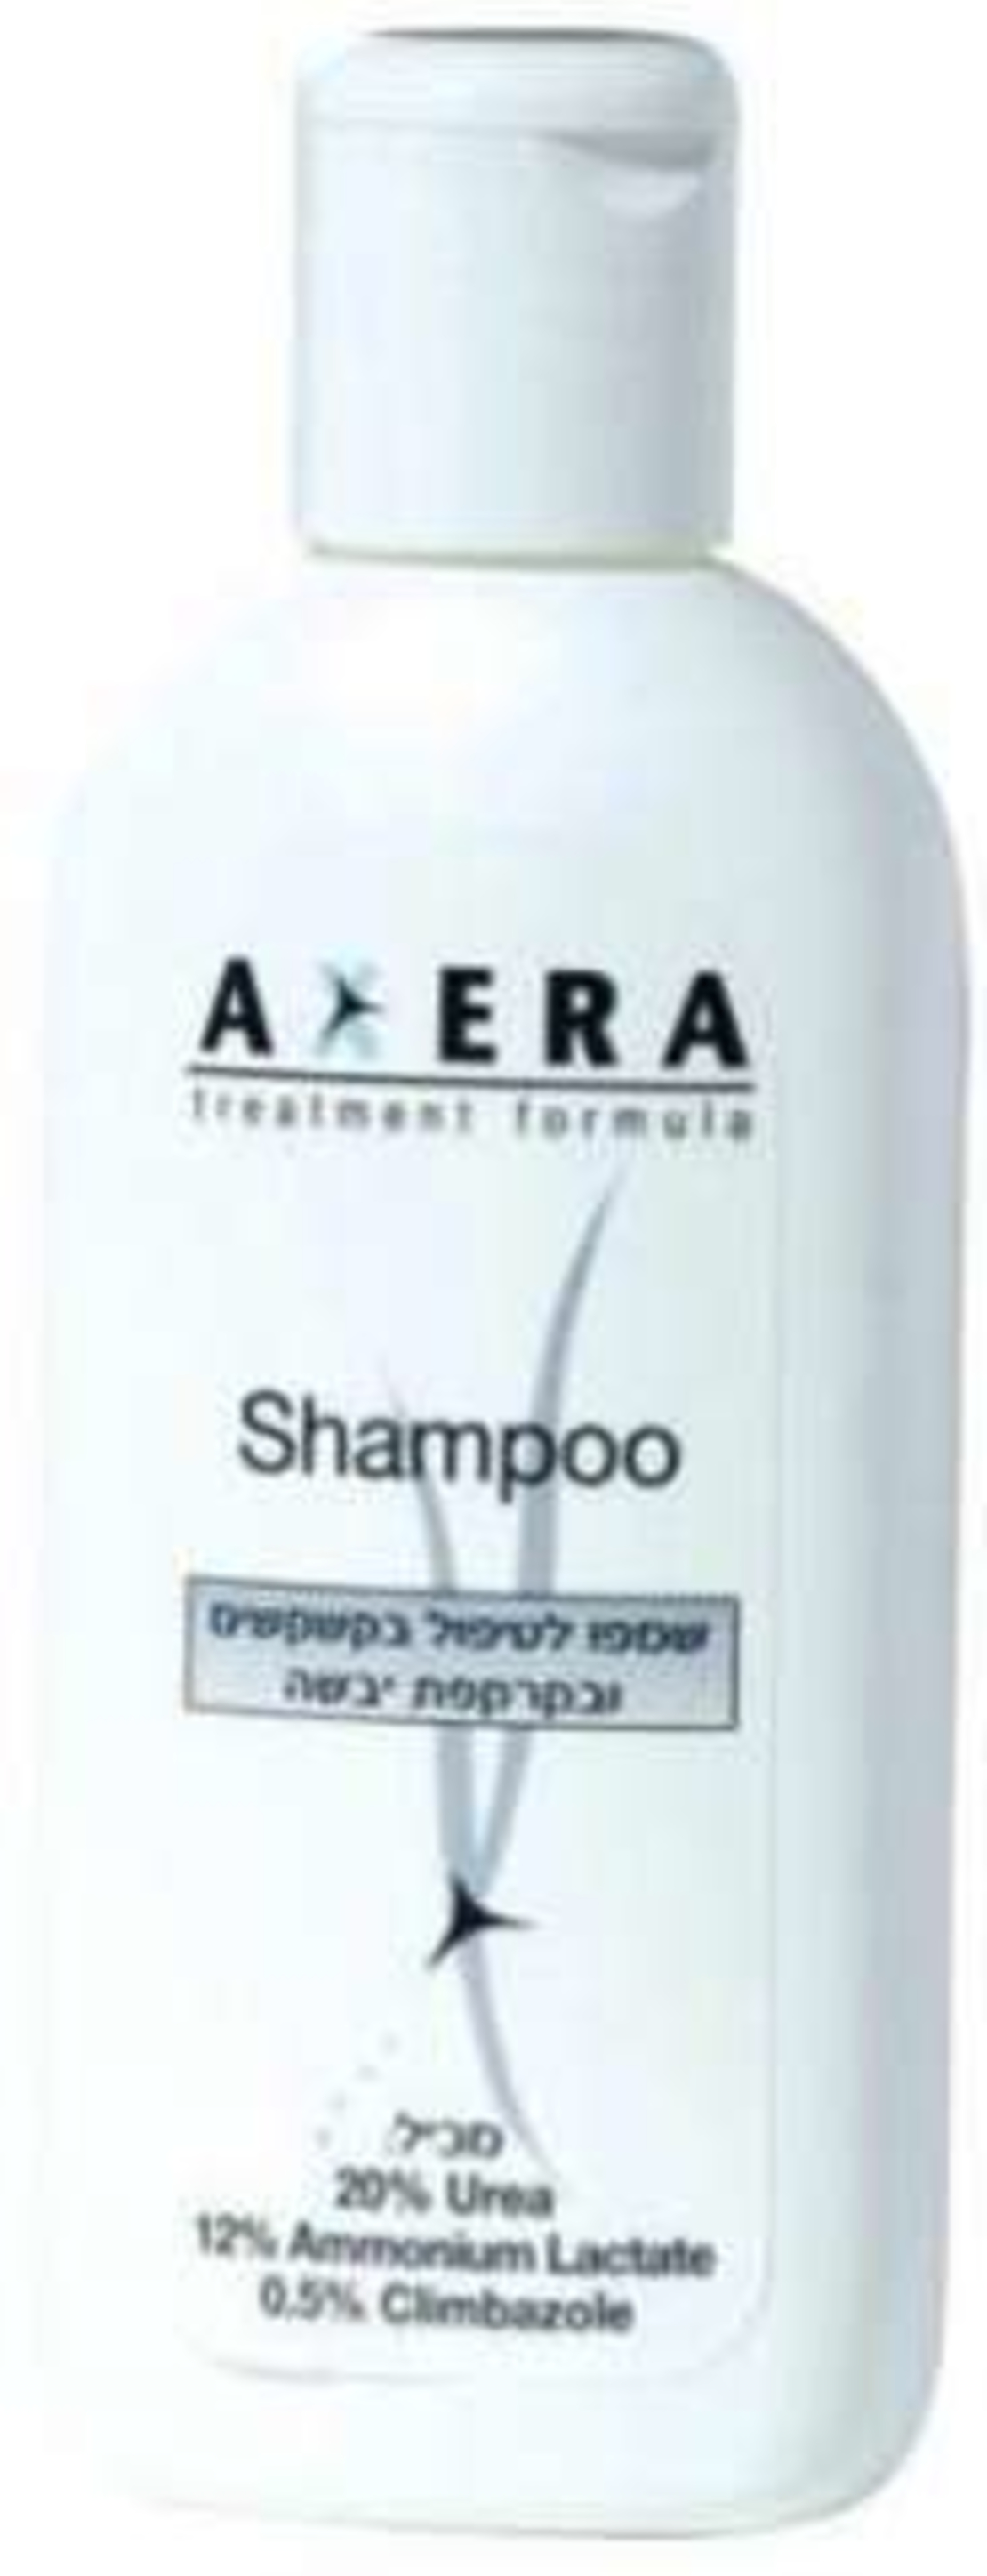 אקסרה שמפו - שמפו לטיפול בקשקשים Axera Shampoo